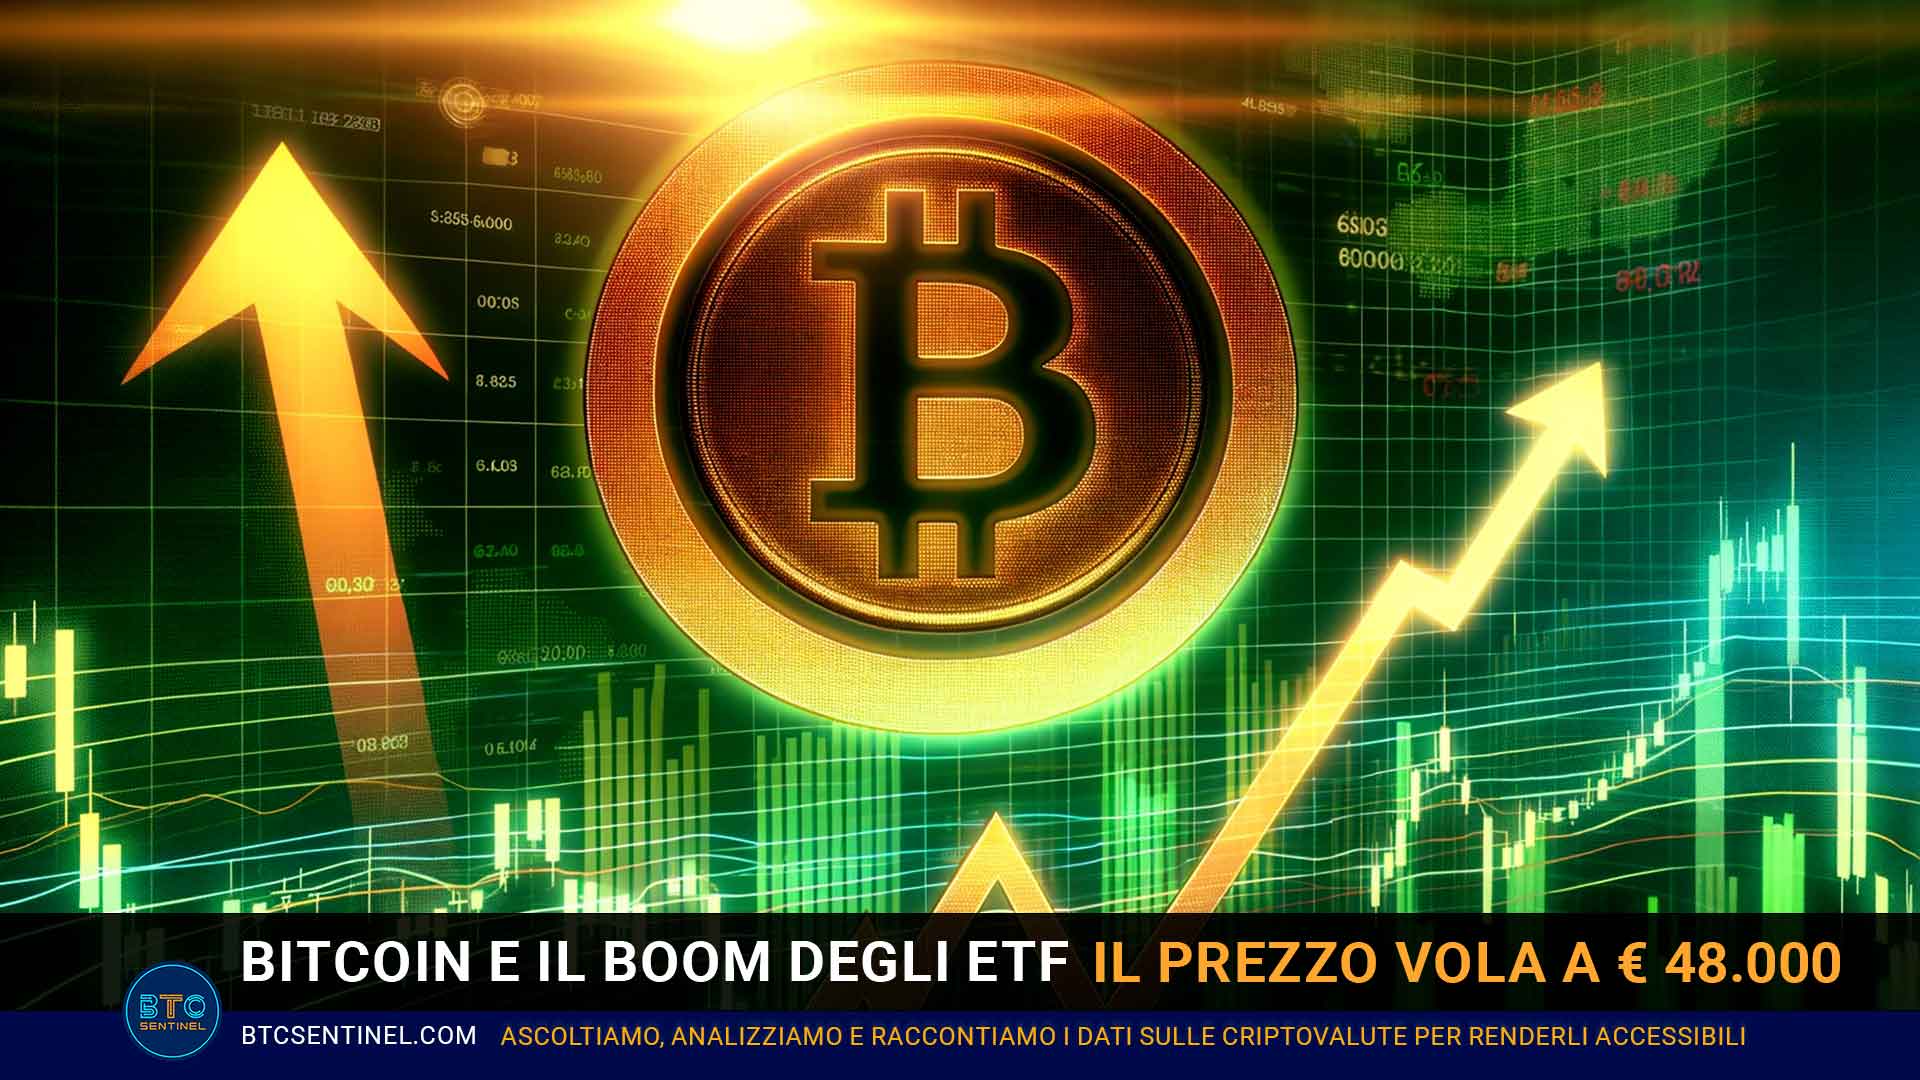 Bitcoin e il boom degli ETF: il prezzo vola oltre i € 48.000